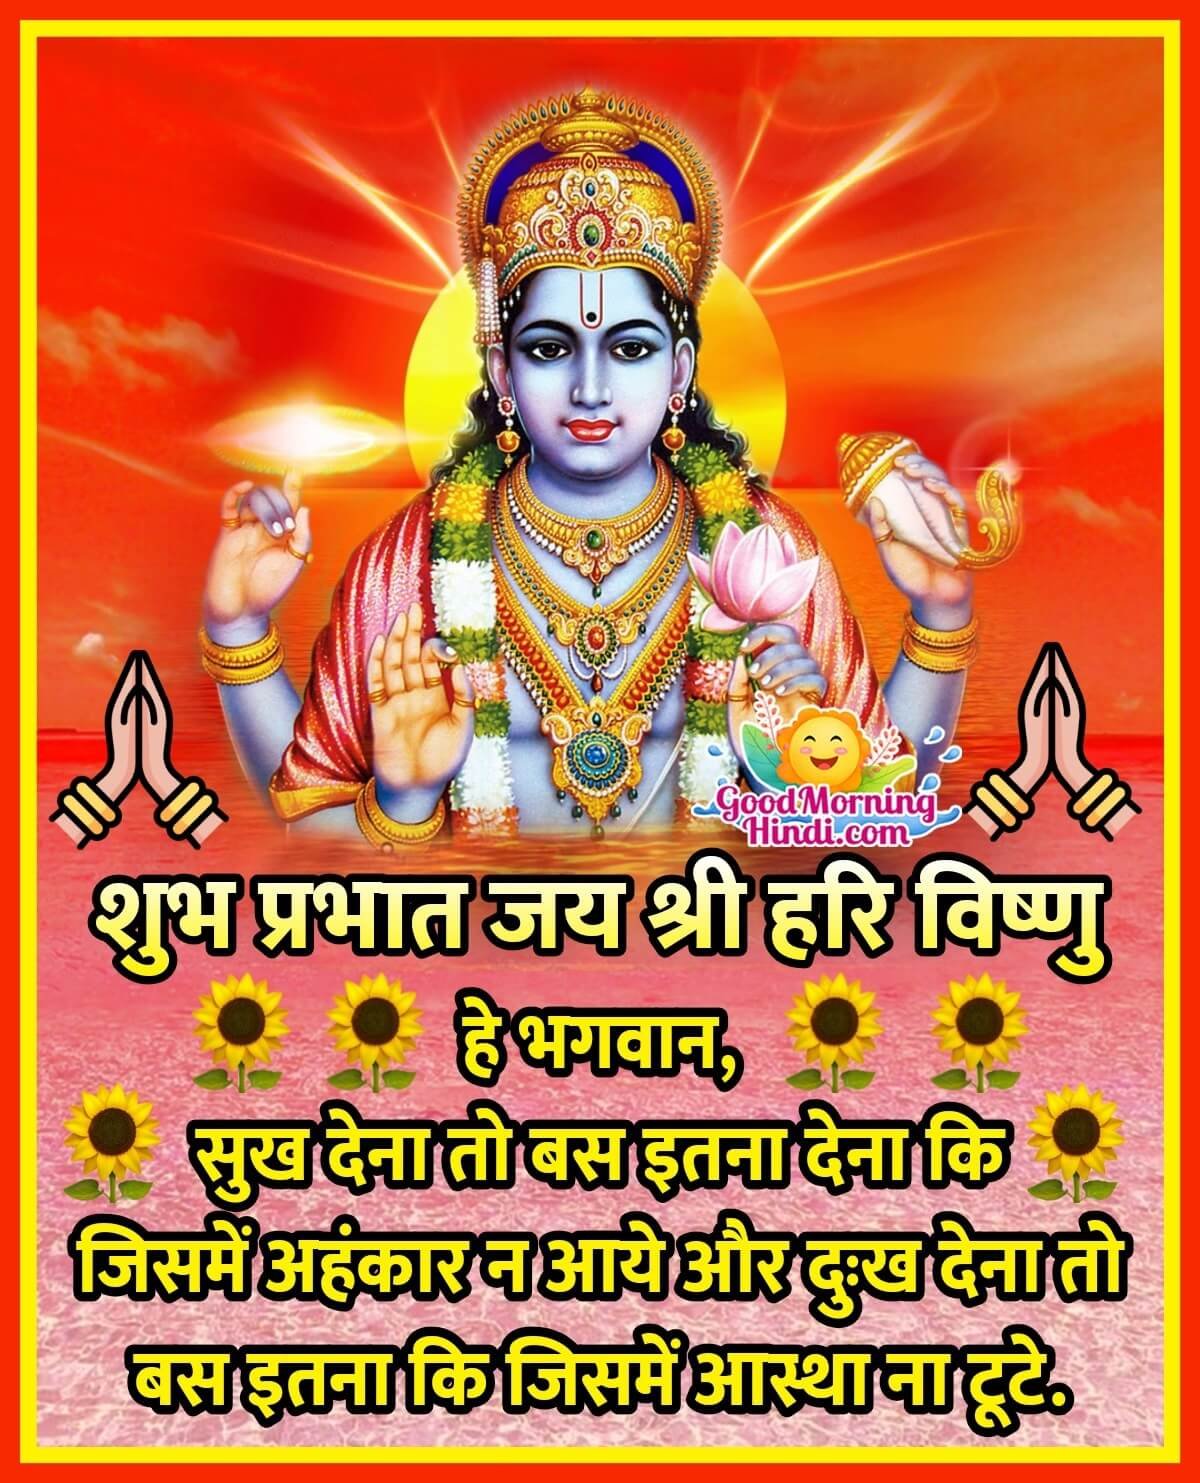 Shubh Prabhat Jai Shri Vishnu Quote